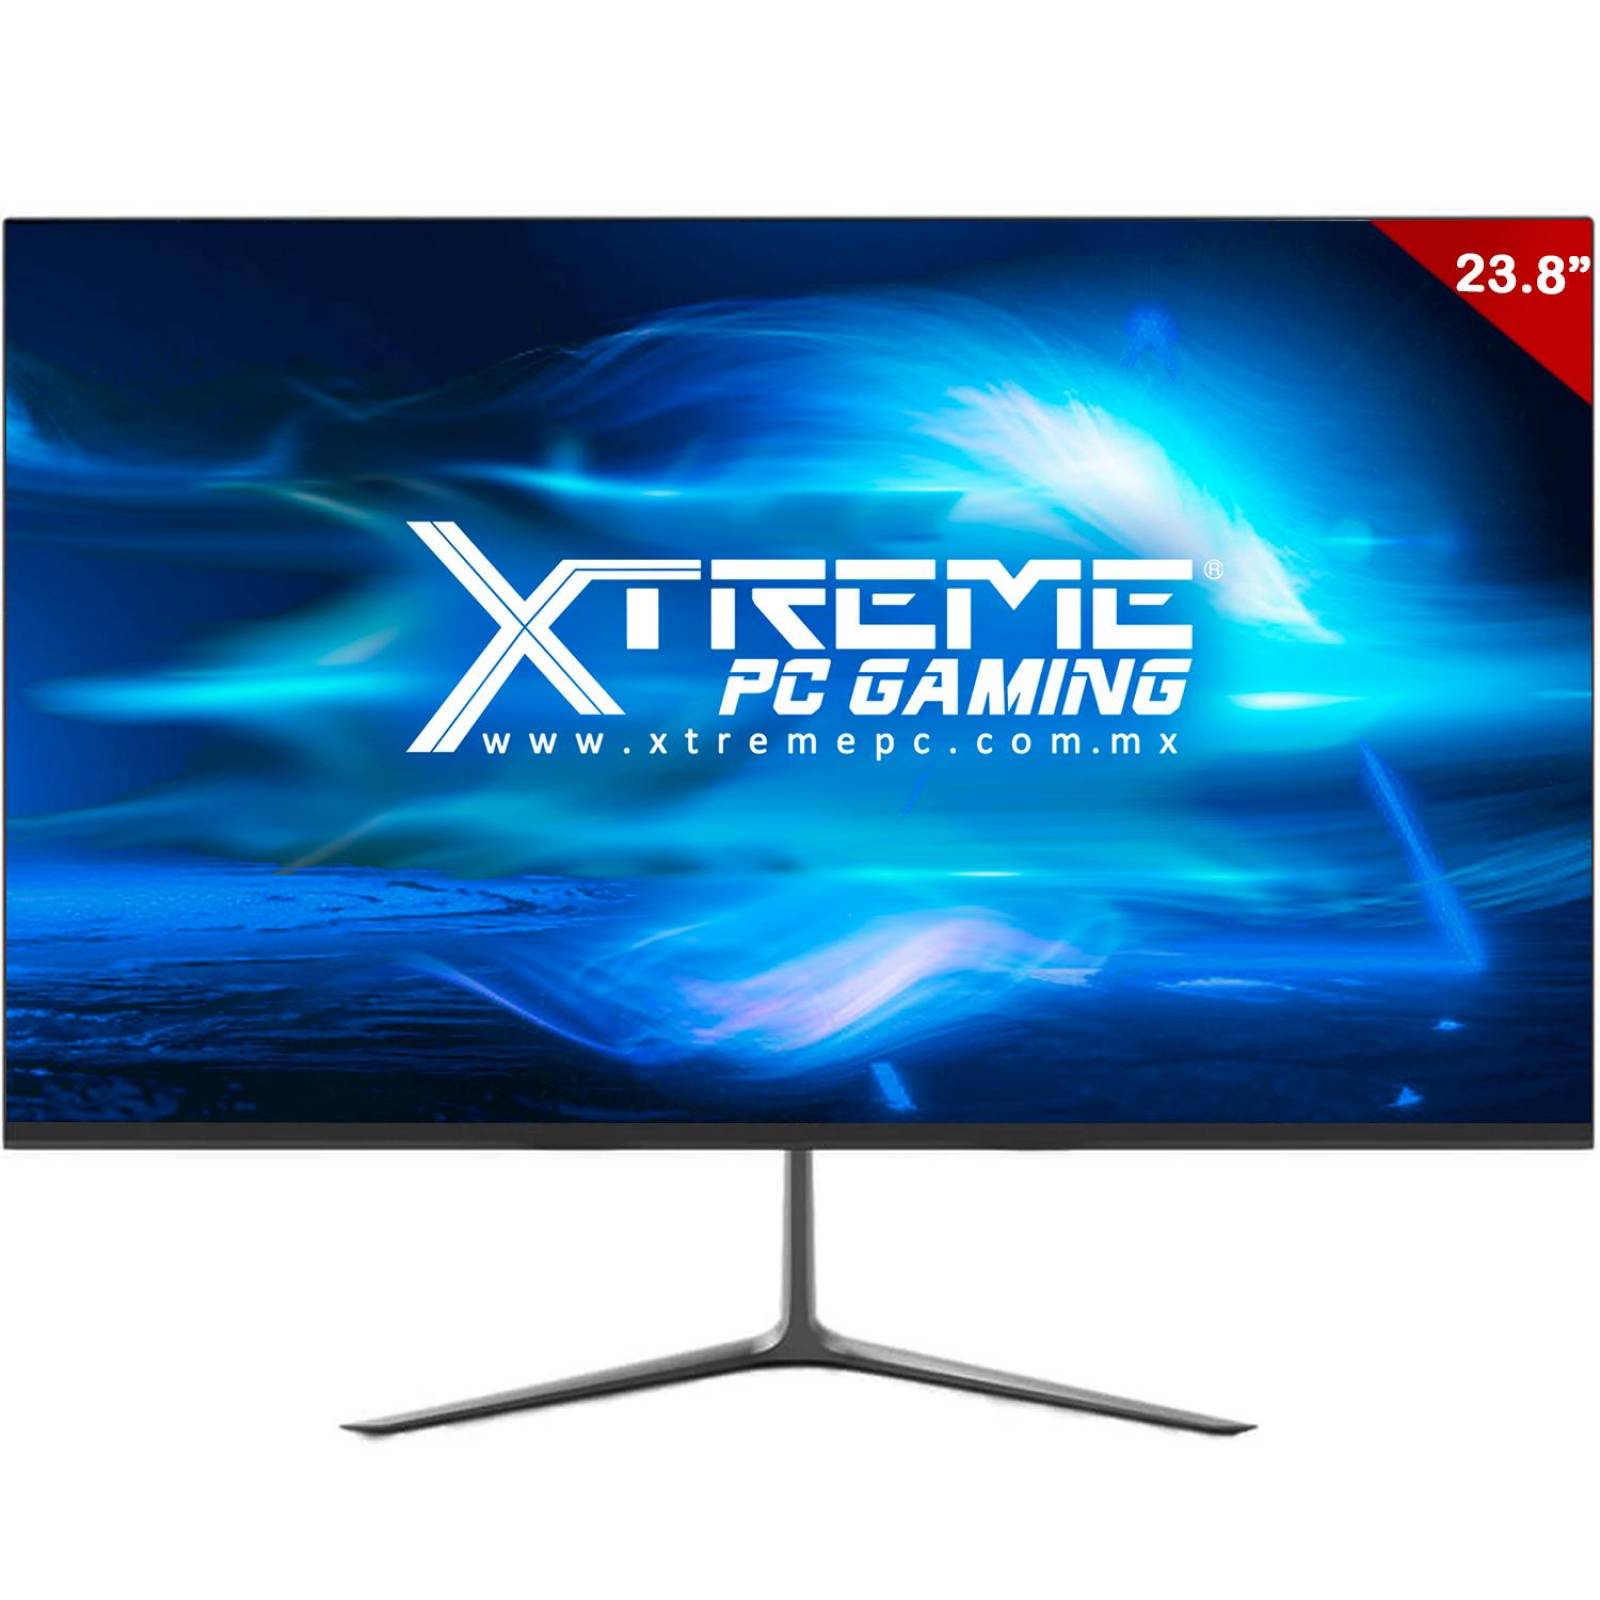 Xtreme PC Gamer Geforce GTX 1650 Super Ryzen 5 3600 16GB SSD 2TB Monitor 144HZ 